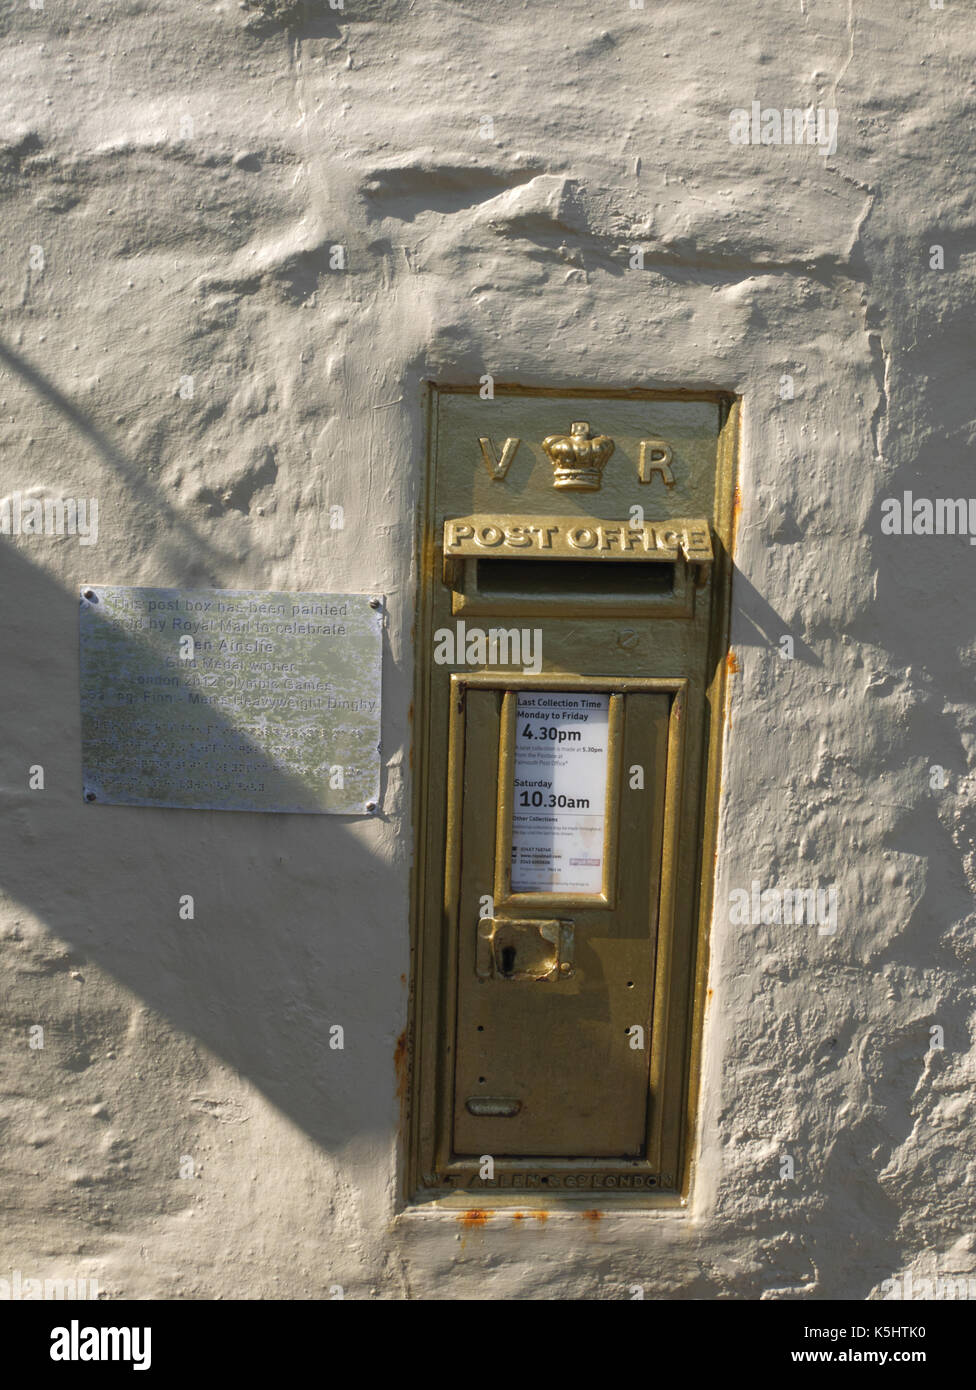 Oro casella di posta sulla parete del pandora inn, restronguet, vicino a Falmouth, Cornwall. commemora la vela medaglia d'oro conquistata da ben ainslie vela th Foto Stock